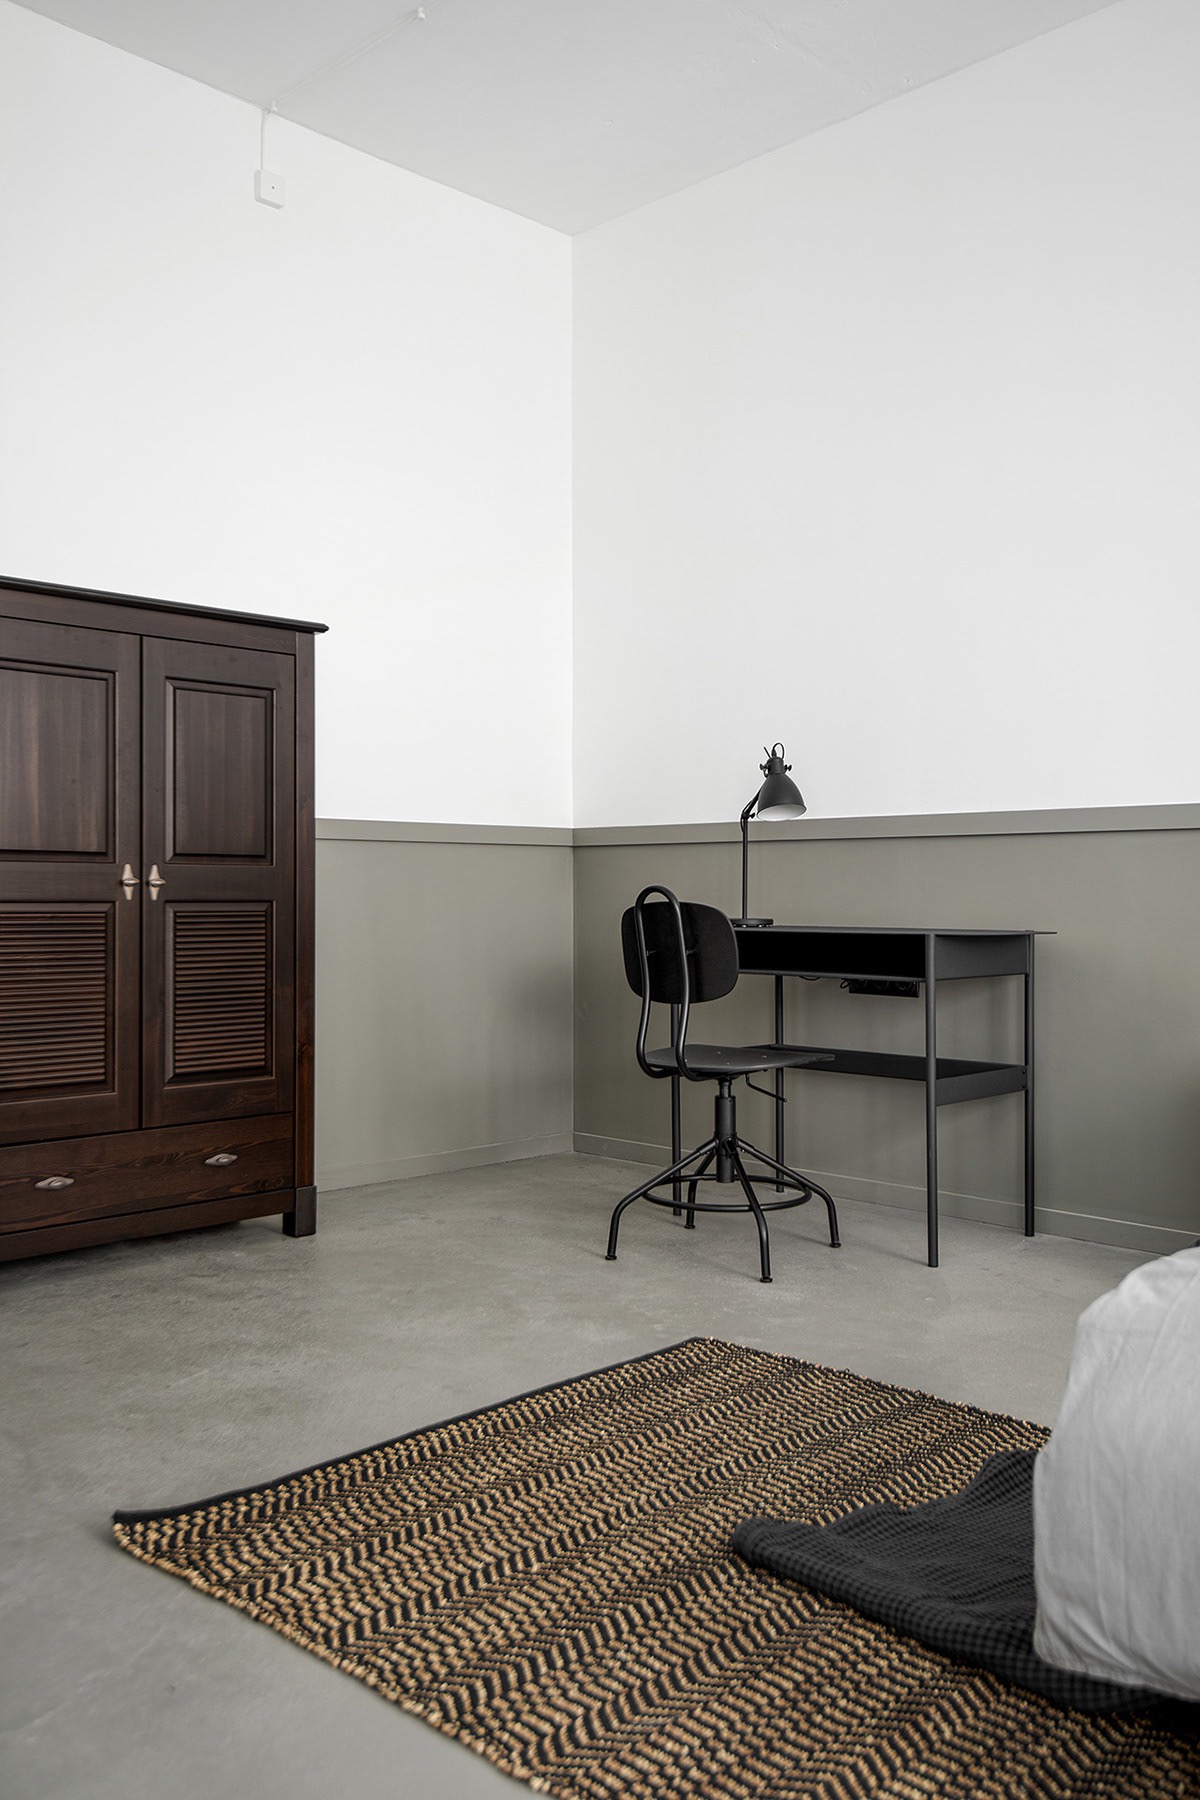 Bàn làm việc hiện đại và phù hợp với chiếc ghế màu đen thiết lập "văn phòng" tại gia phong cách tối giản ở góc phòng ngủ.